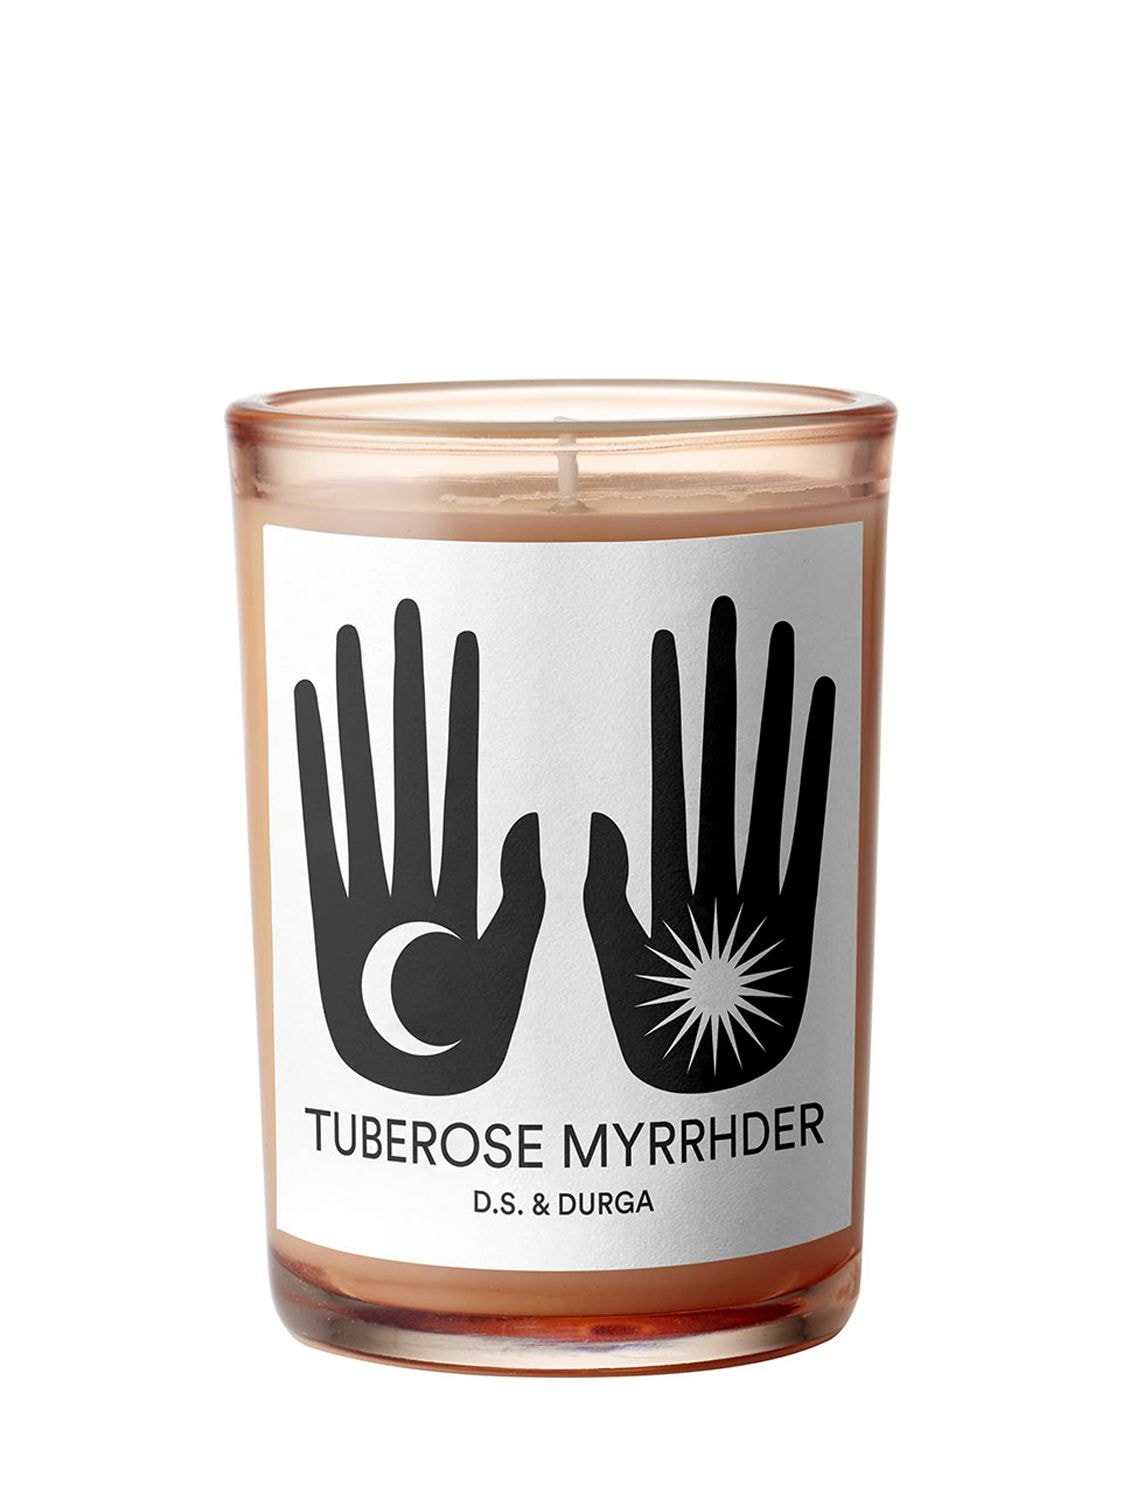 Image of 200gr Tuberose Myrrhder Candle